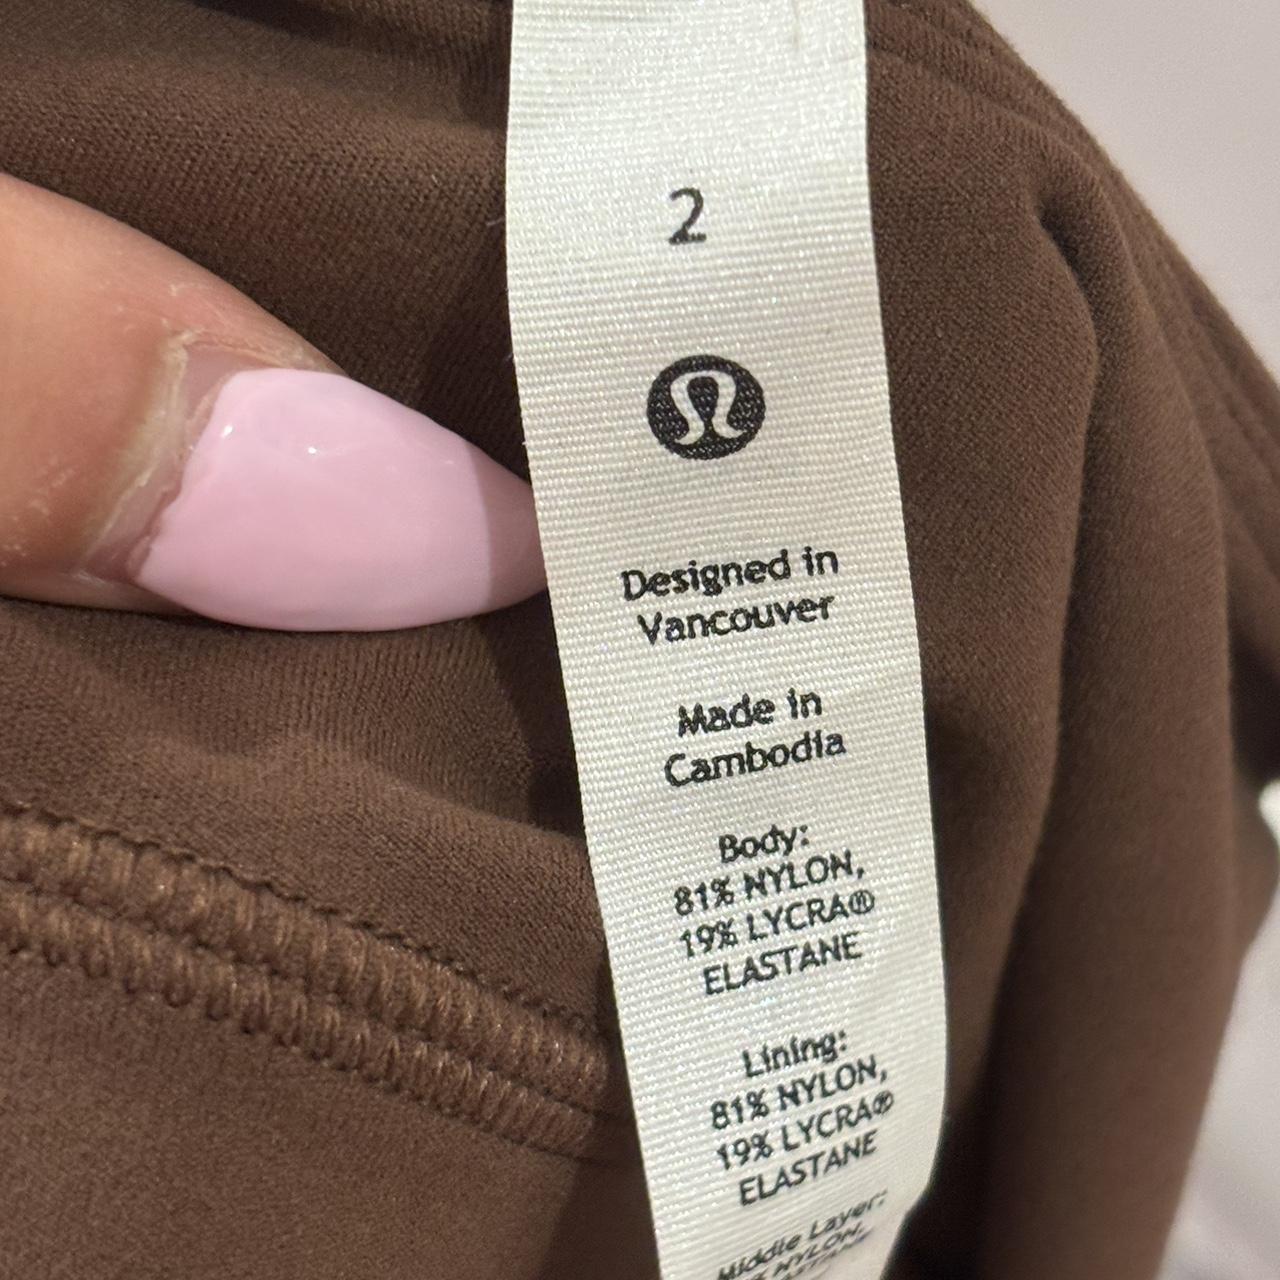 Size US 2 (UK 6) 25” barely worn lululemon Align HR - Depop